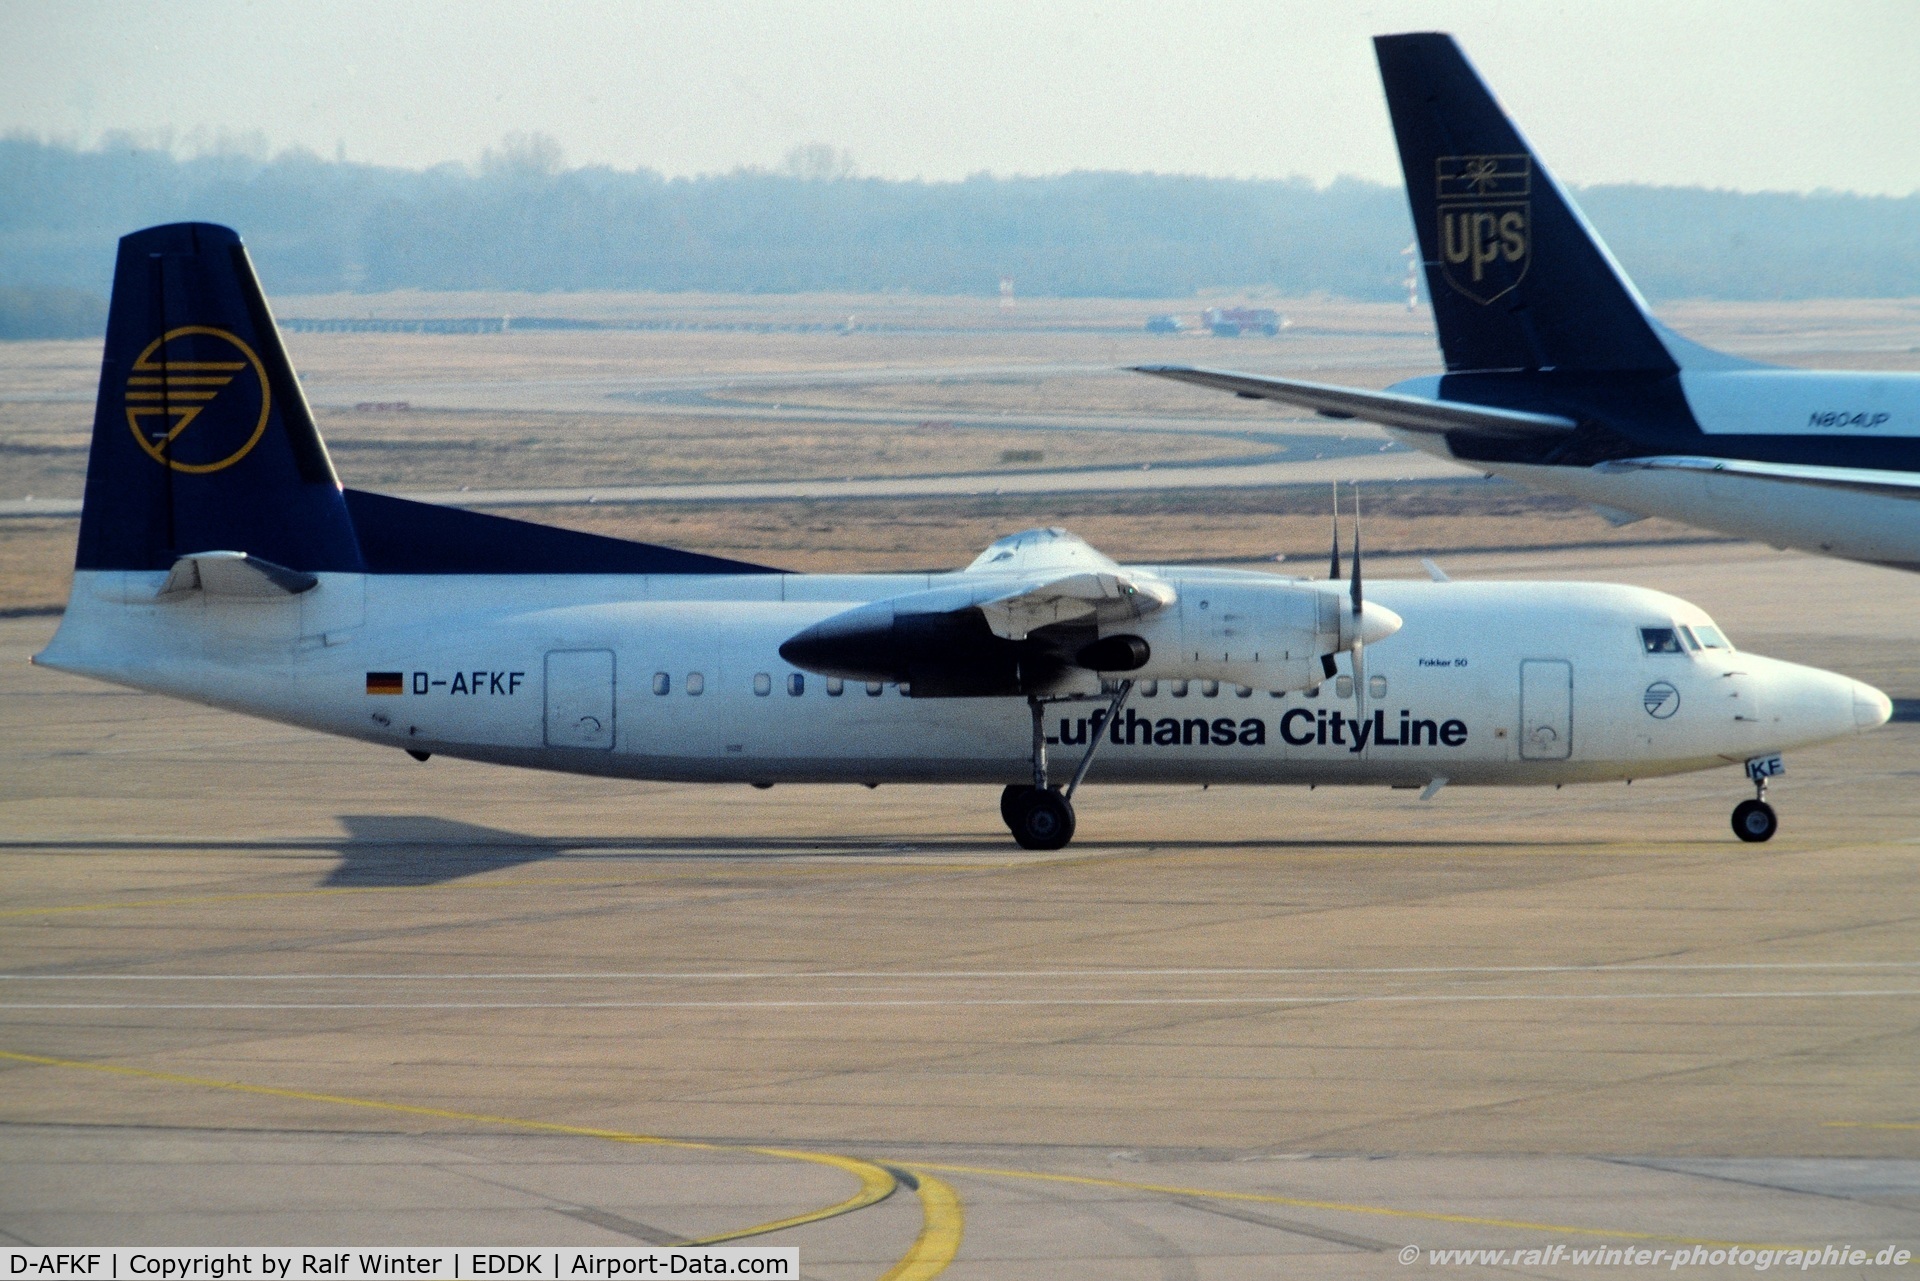 D-AFKF, 1988 Fokker 50 C/N 20141, Fokker 50 F27 Mark 050 - Lufthansa CityLine - 20141 - D-AFKF - 02.2003 - CGN